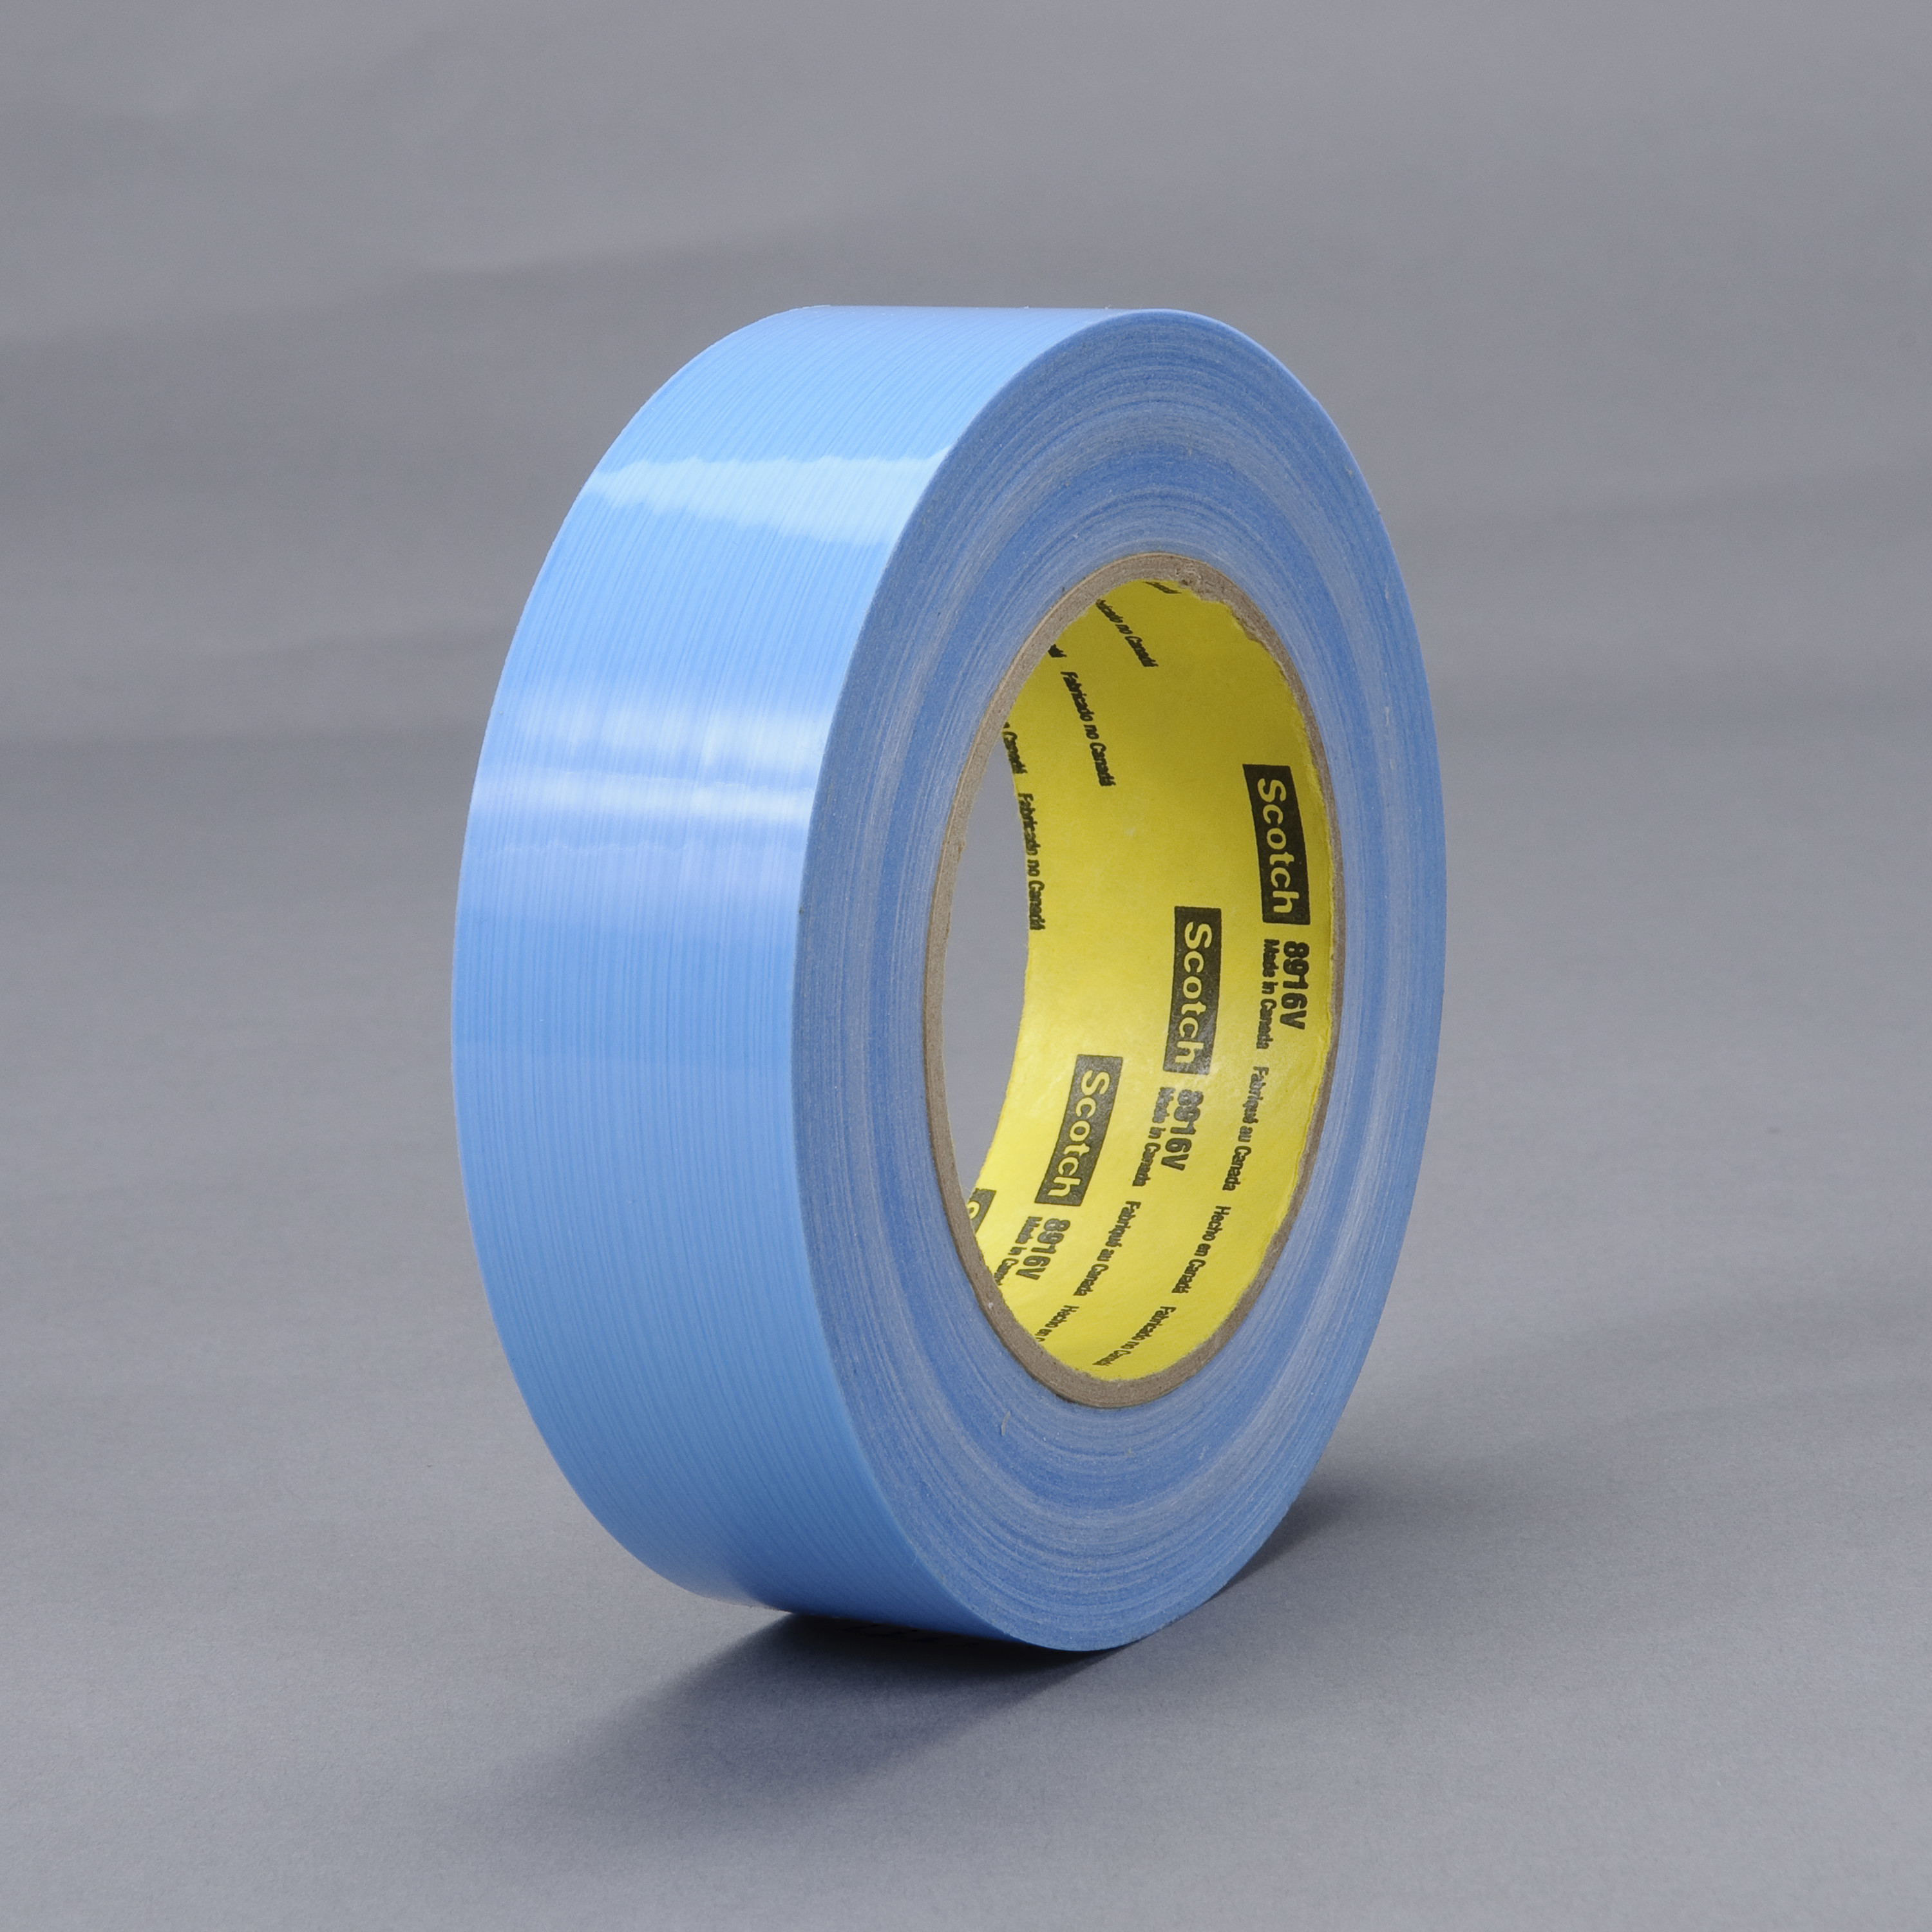 Scotch® Filament Tape 8916V, Blue, 36 mm x 55 m, 6.8 mil, 6.8 mil, 24
rolls per case